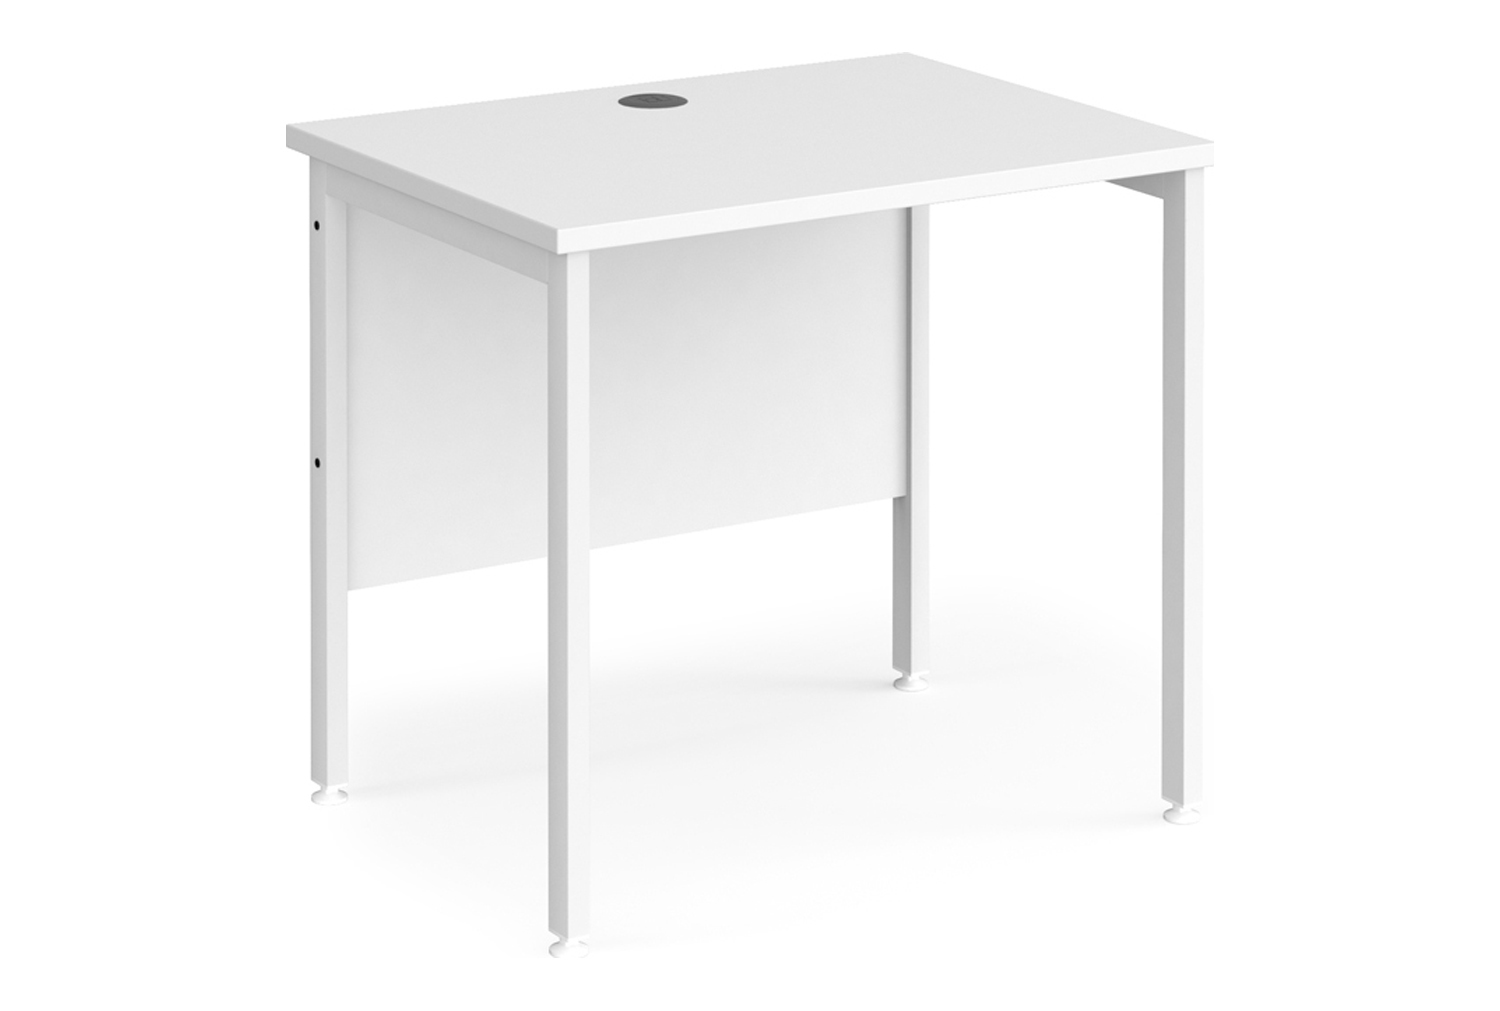 All White Premium H-Leg Narrow Rectangular Office Desk, 80wx60dx73h (cm), Fully Installed